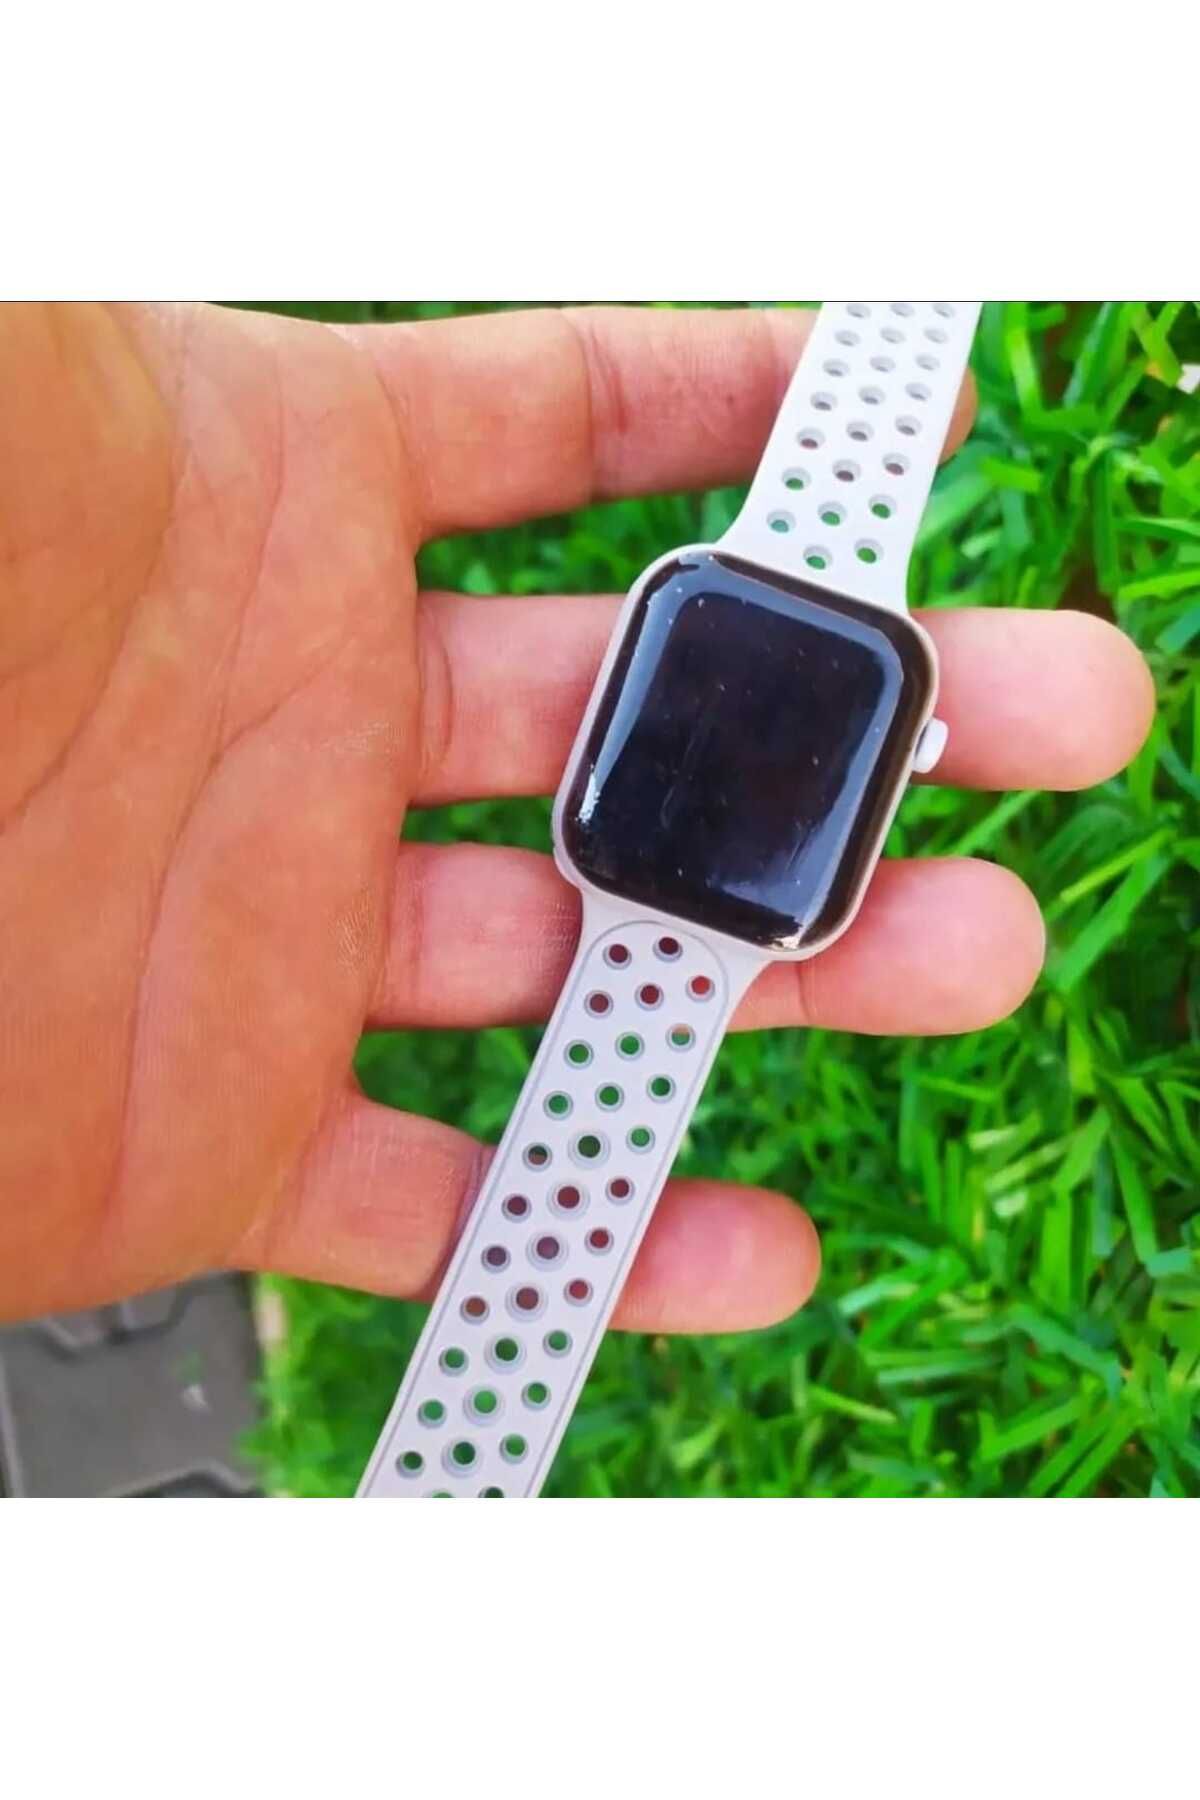 G-Sport POLO Su Geçirmez Apple Watch Saat (AKILLI SAAT DEĞİLDİR)